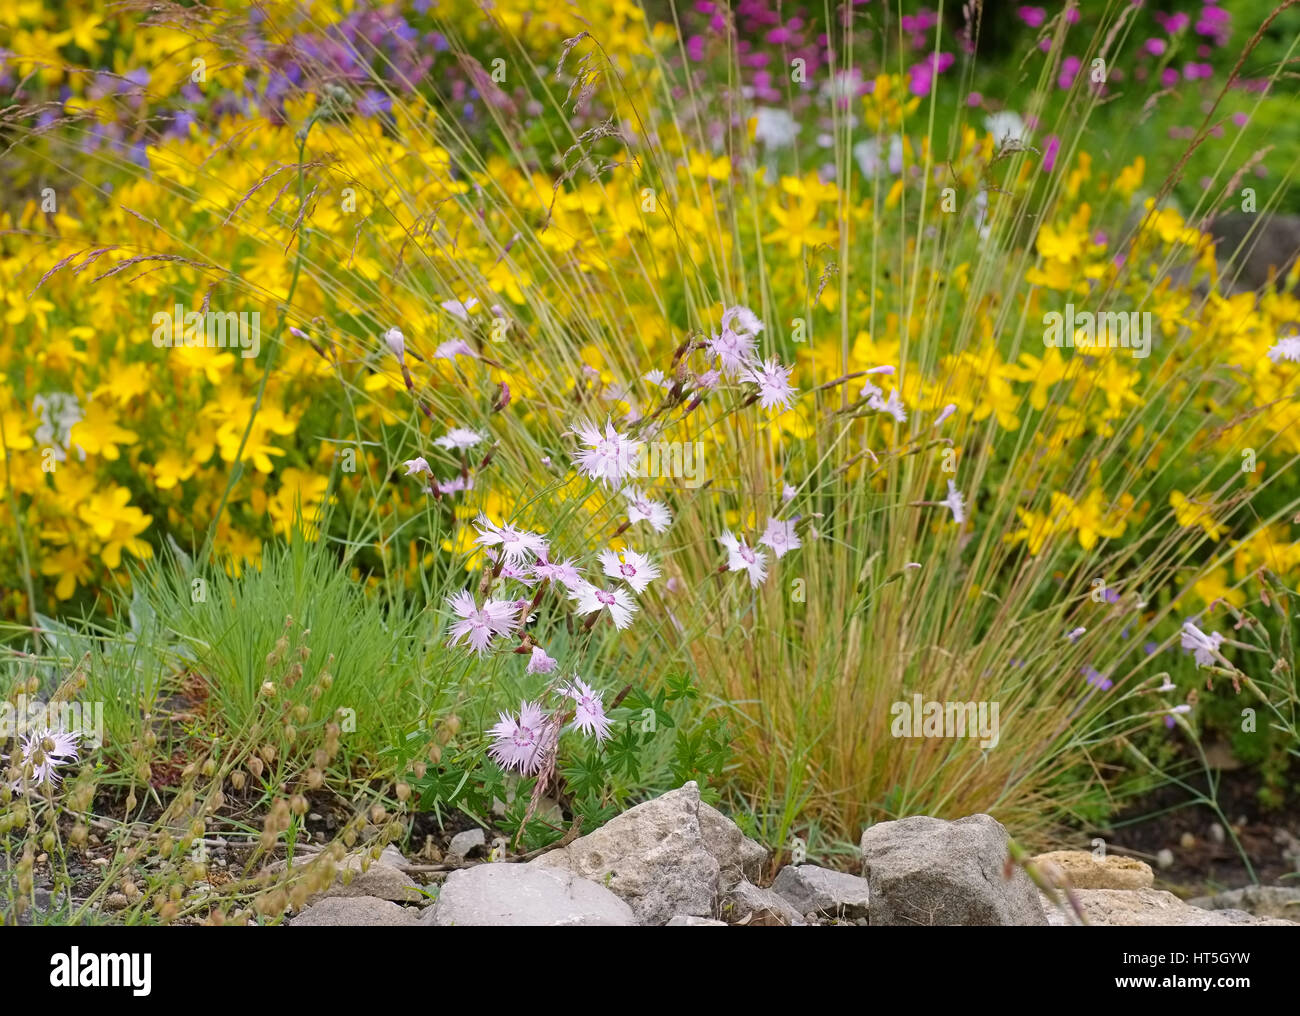 Olymp-Johanniskraut und Feder-Nelke - Hypericum olympicum e Dianthus Plumarius, piccoli fiori di campo Foto Stock